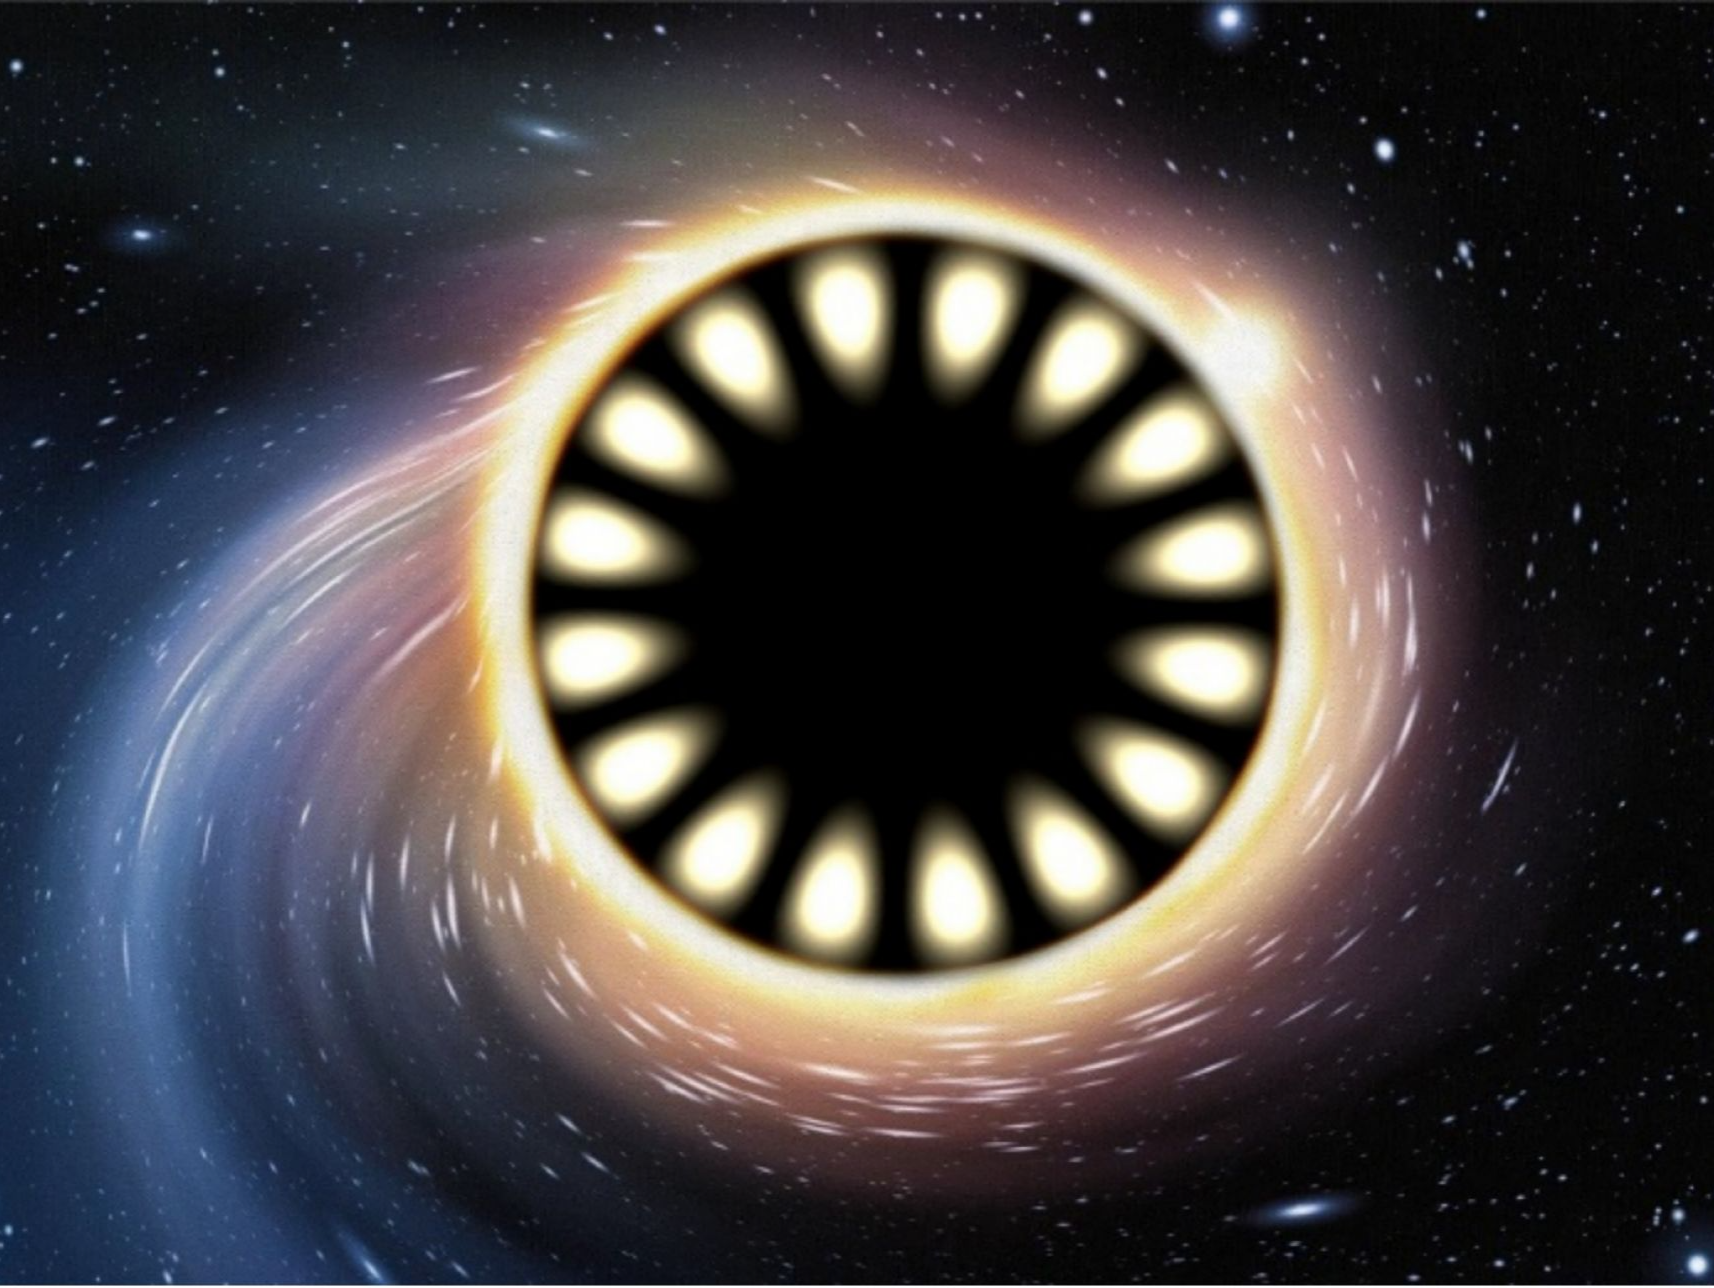 厦大团队利用变换光学原理构造出“光学黑洞微腔”